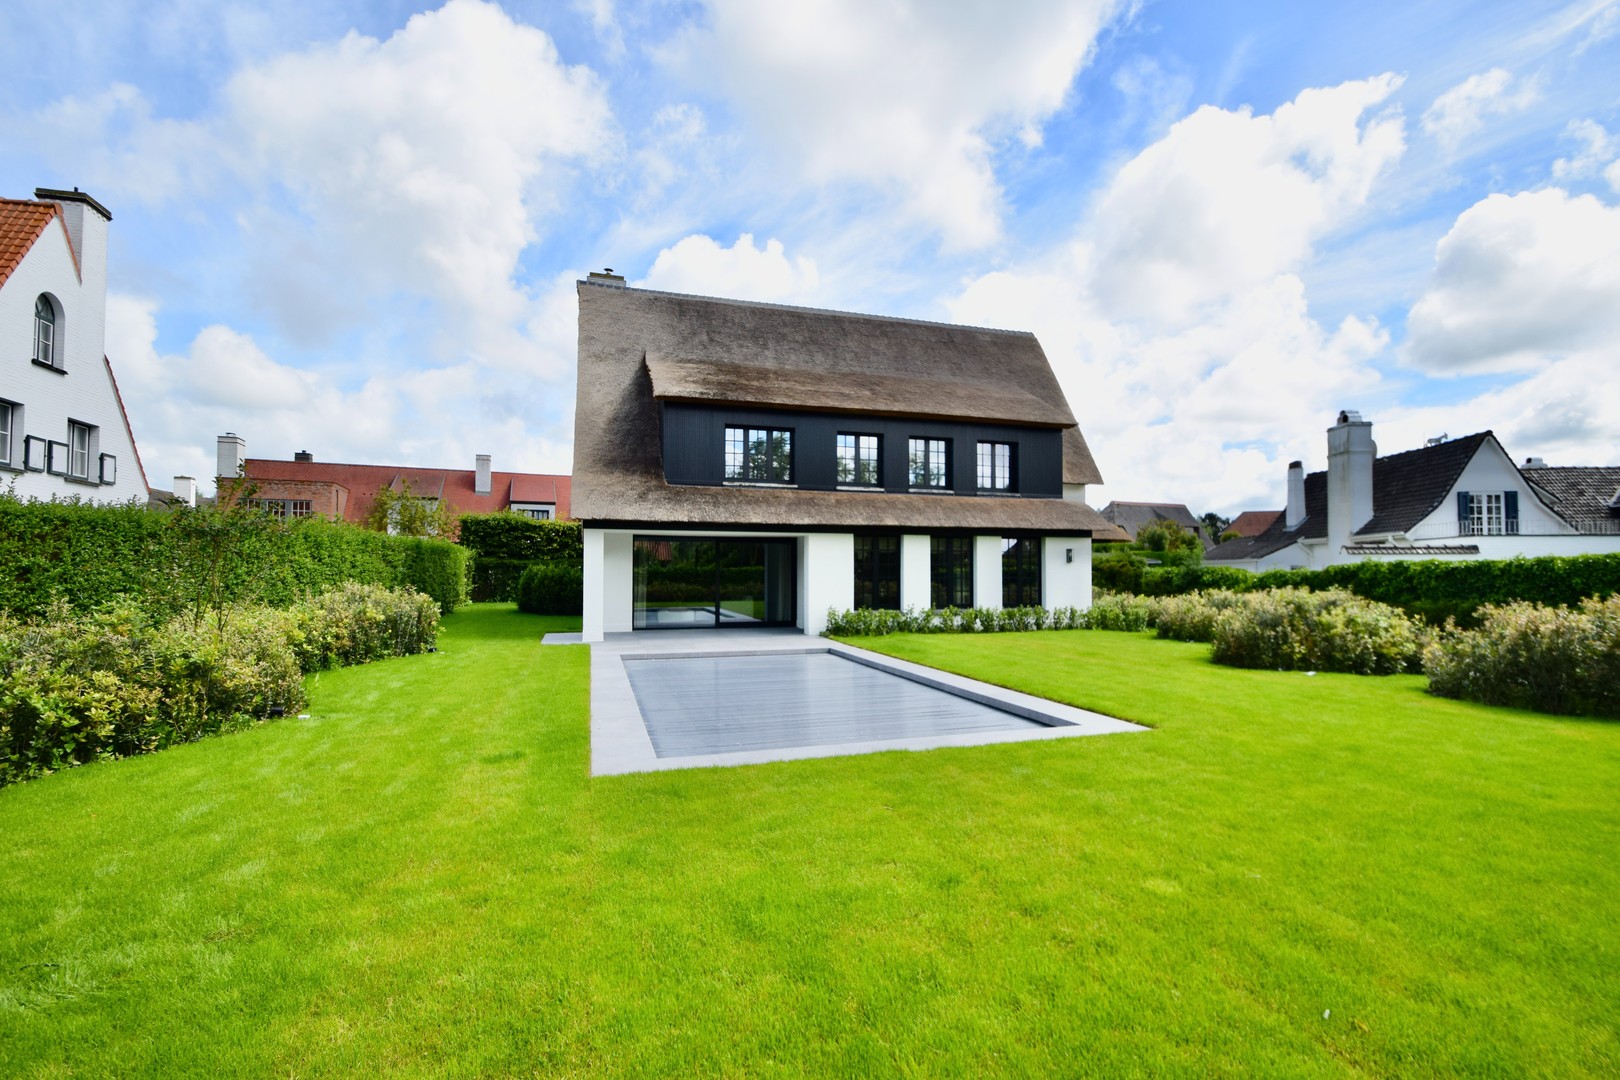 Alleenstaande villa uitzonderlijk rustig gelegen in een groene omgeving, aan de rand van het Zoute vlakbij de Kalfsmolen en de Graaf Jansdijk. foto 24